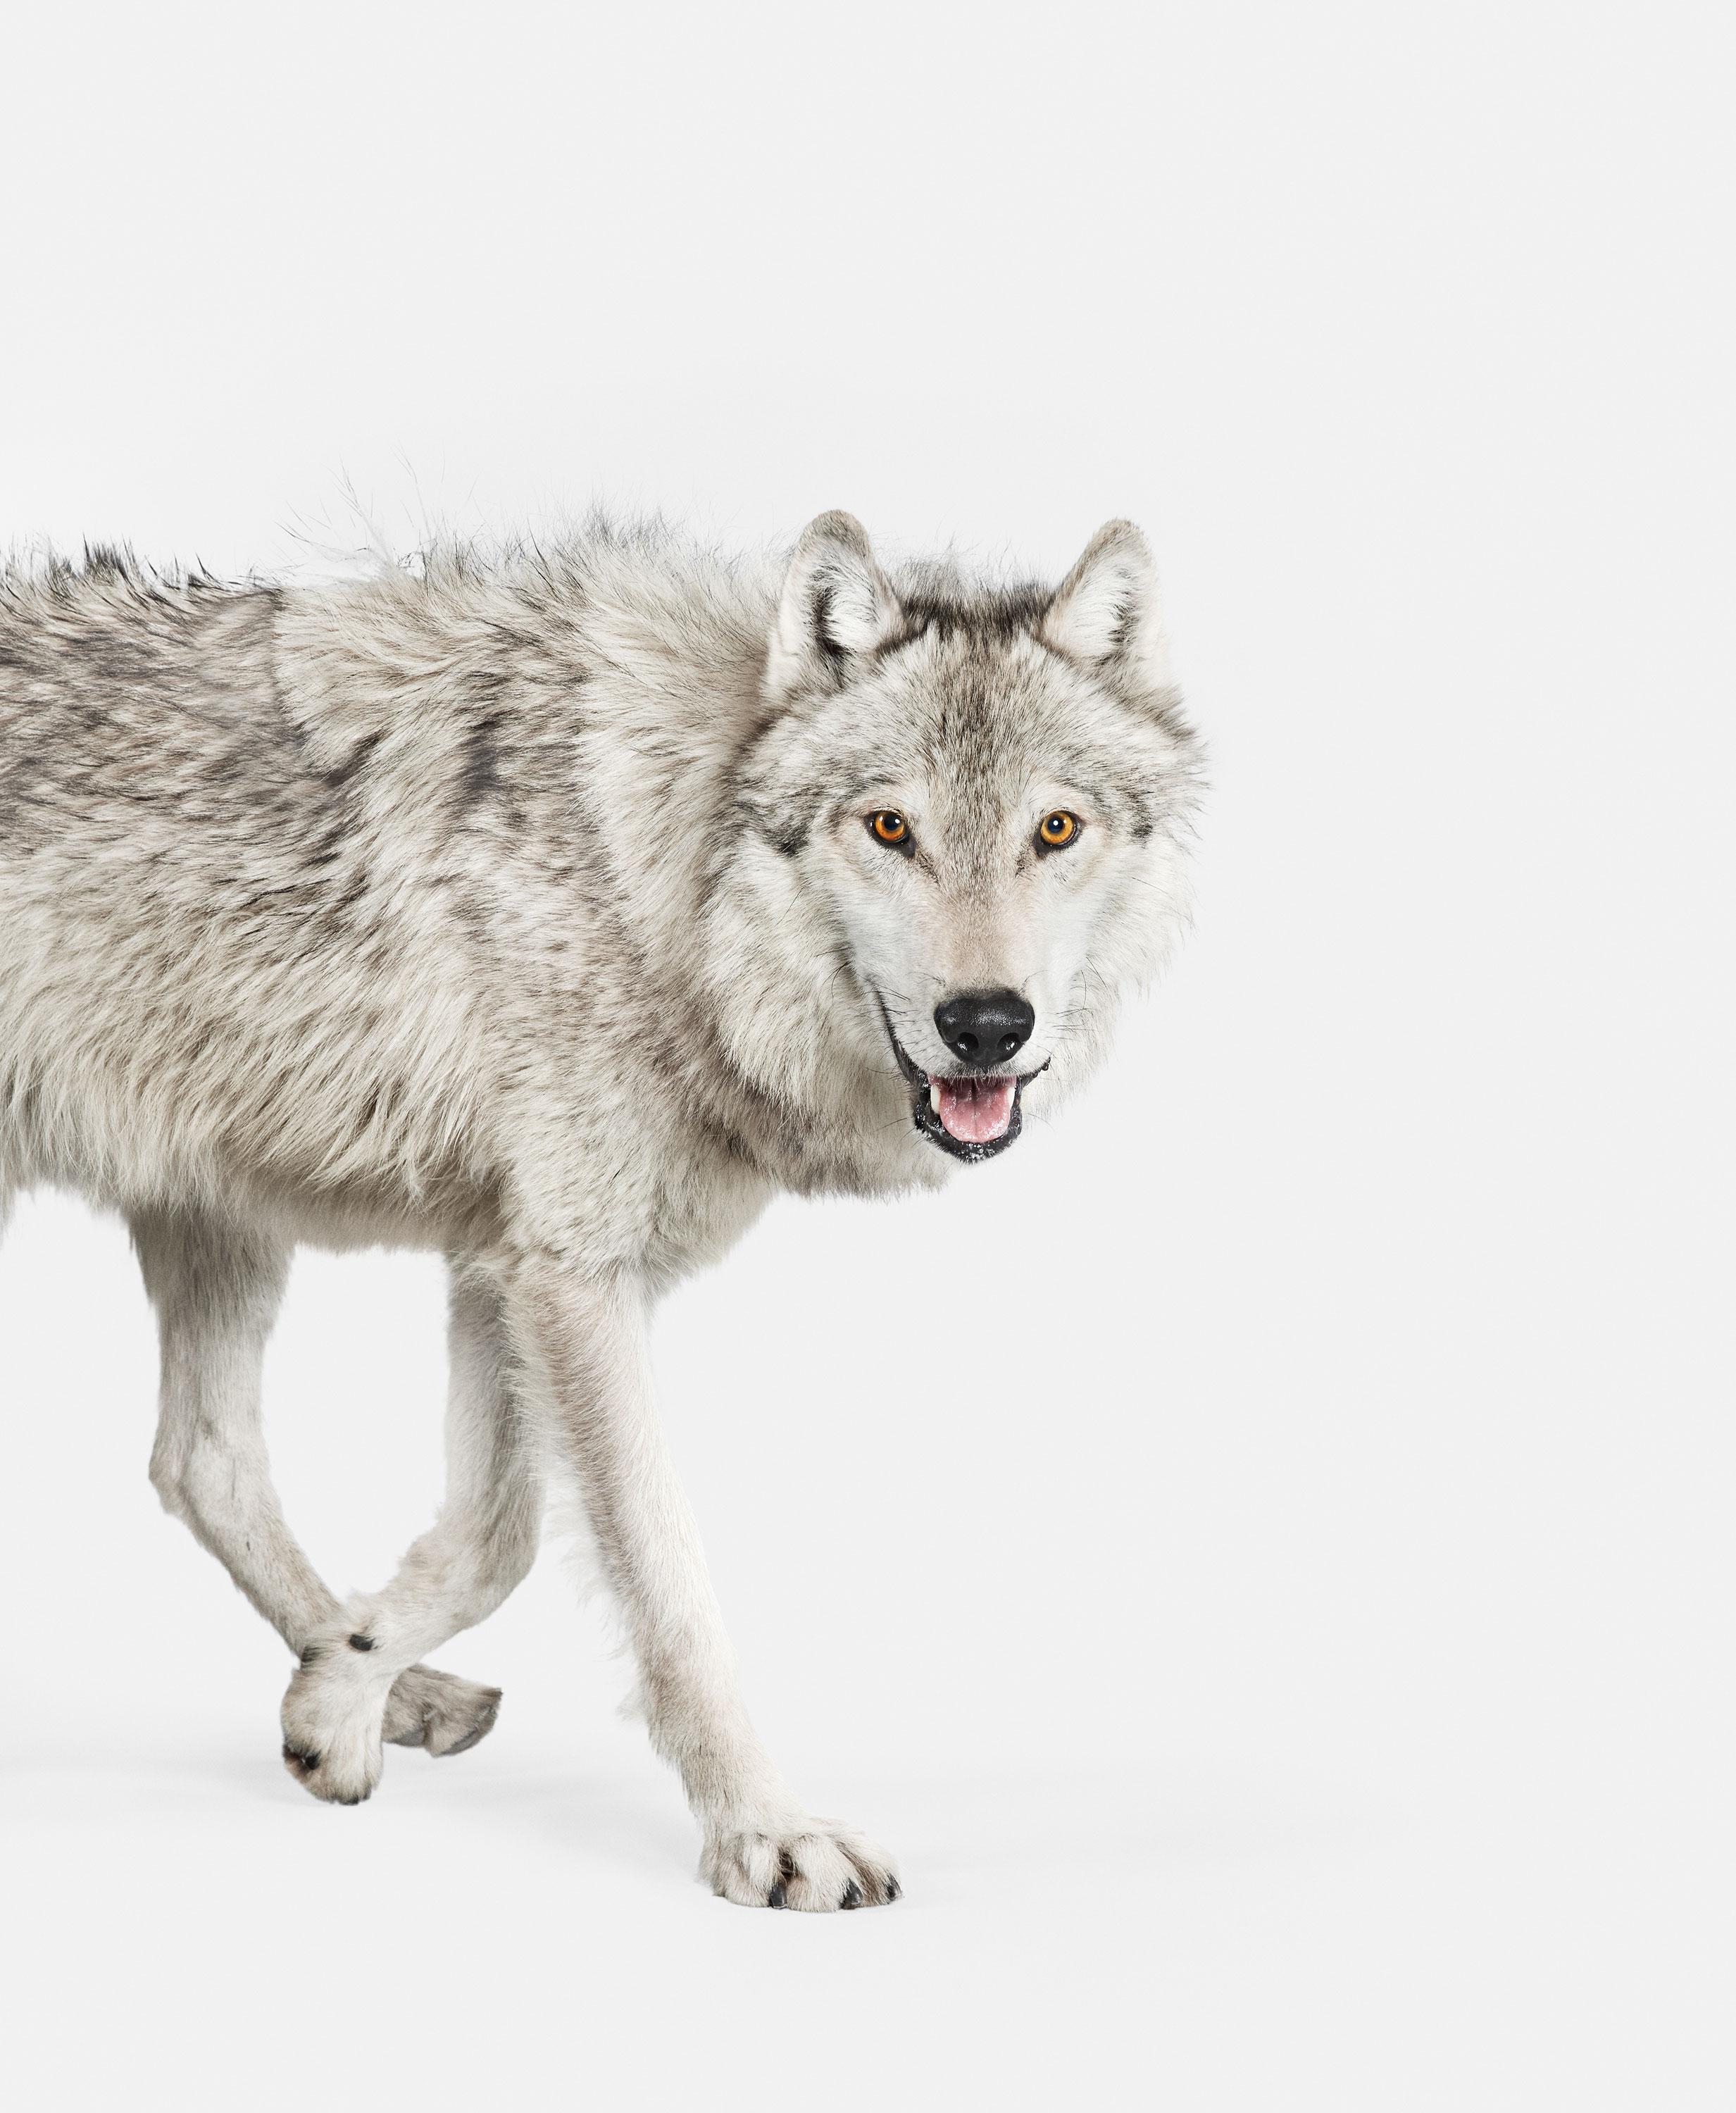 Randal Ford - Wolf gris en bois, photographie 2018